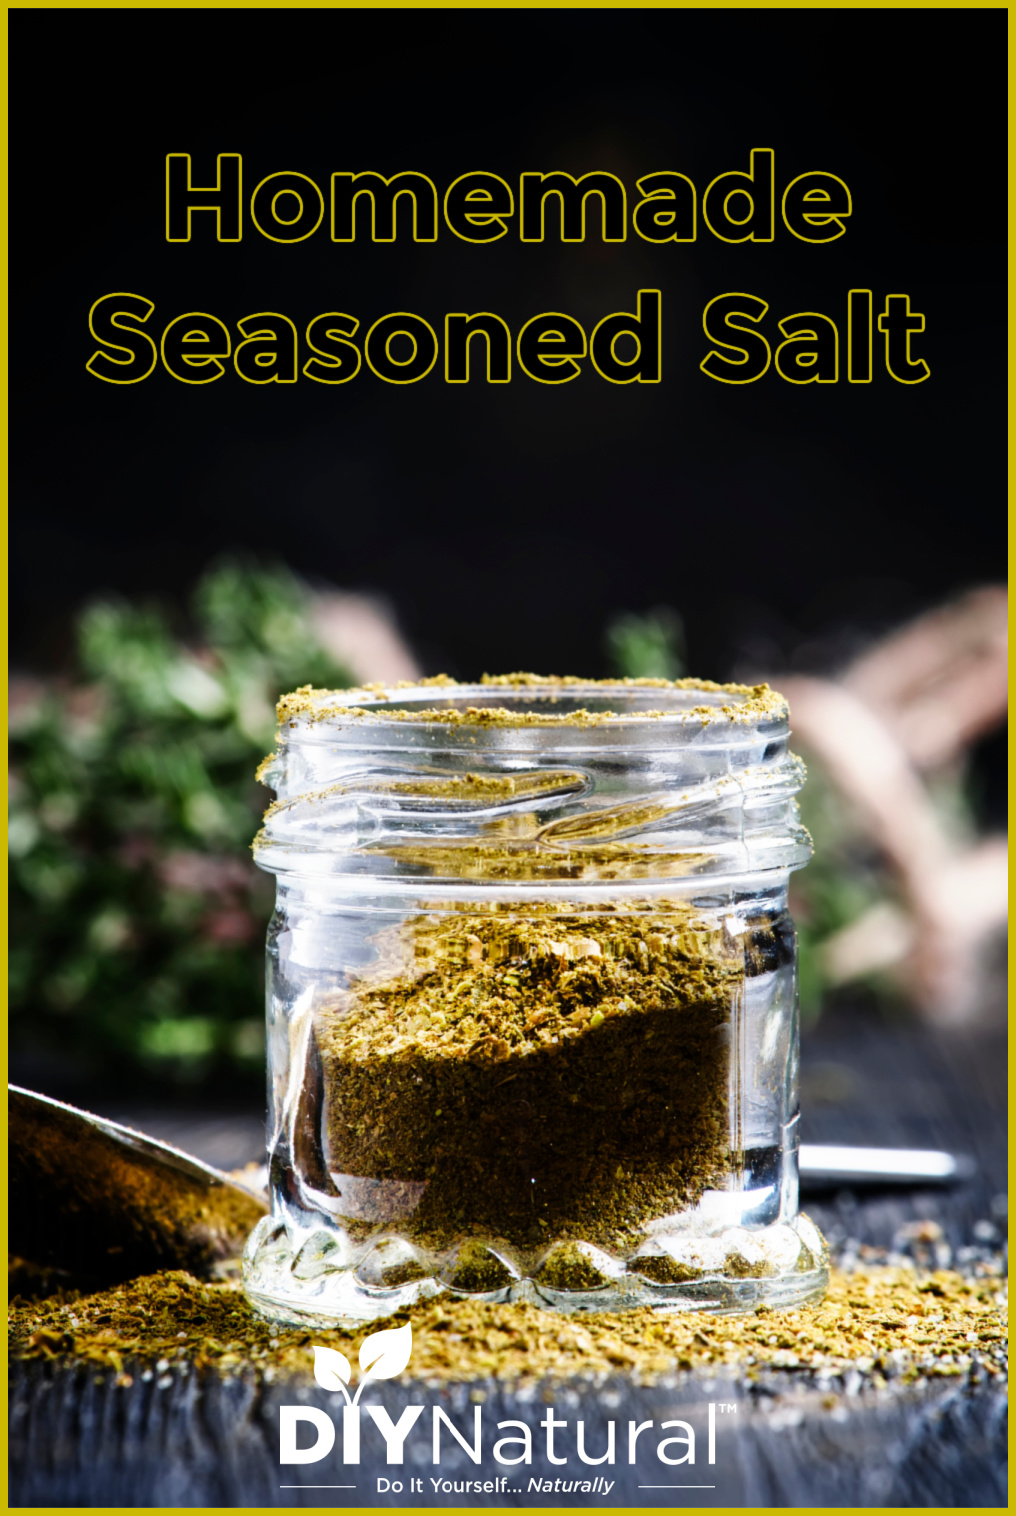 Homemade Seasoned Salt: Making Your Own Seasoning Salt is Simple